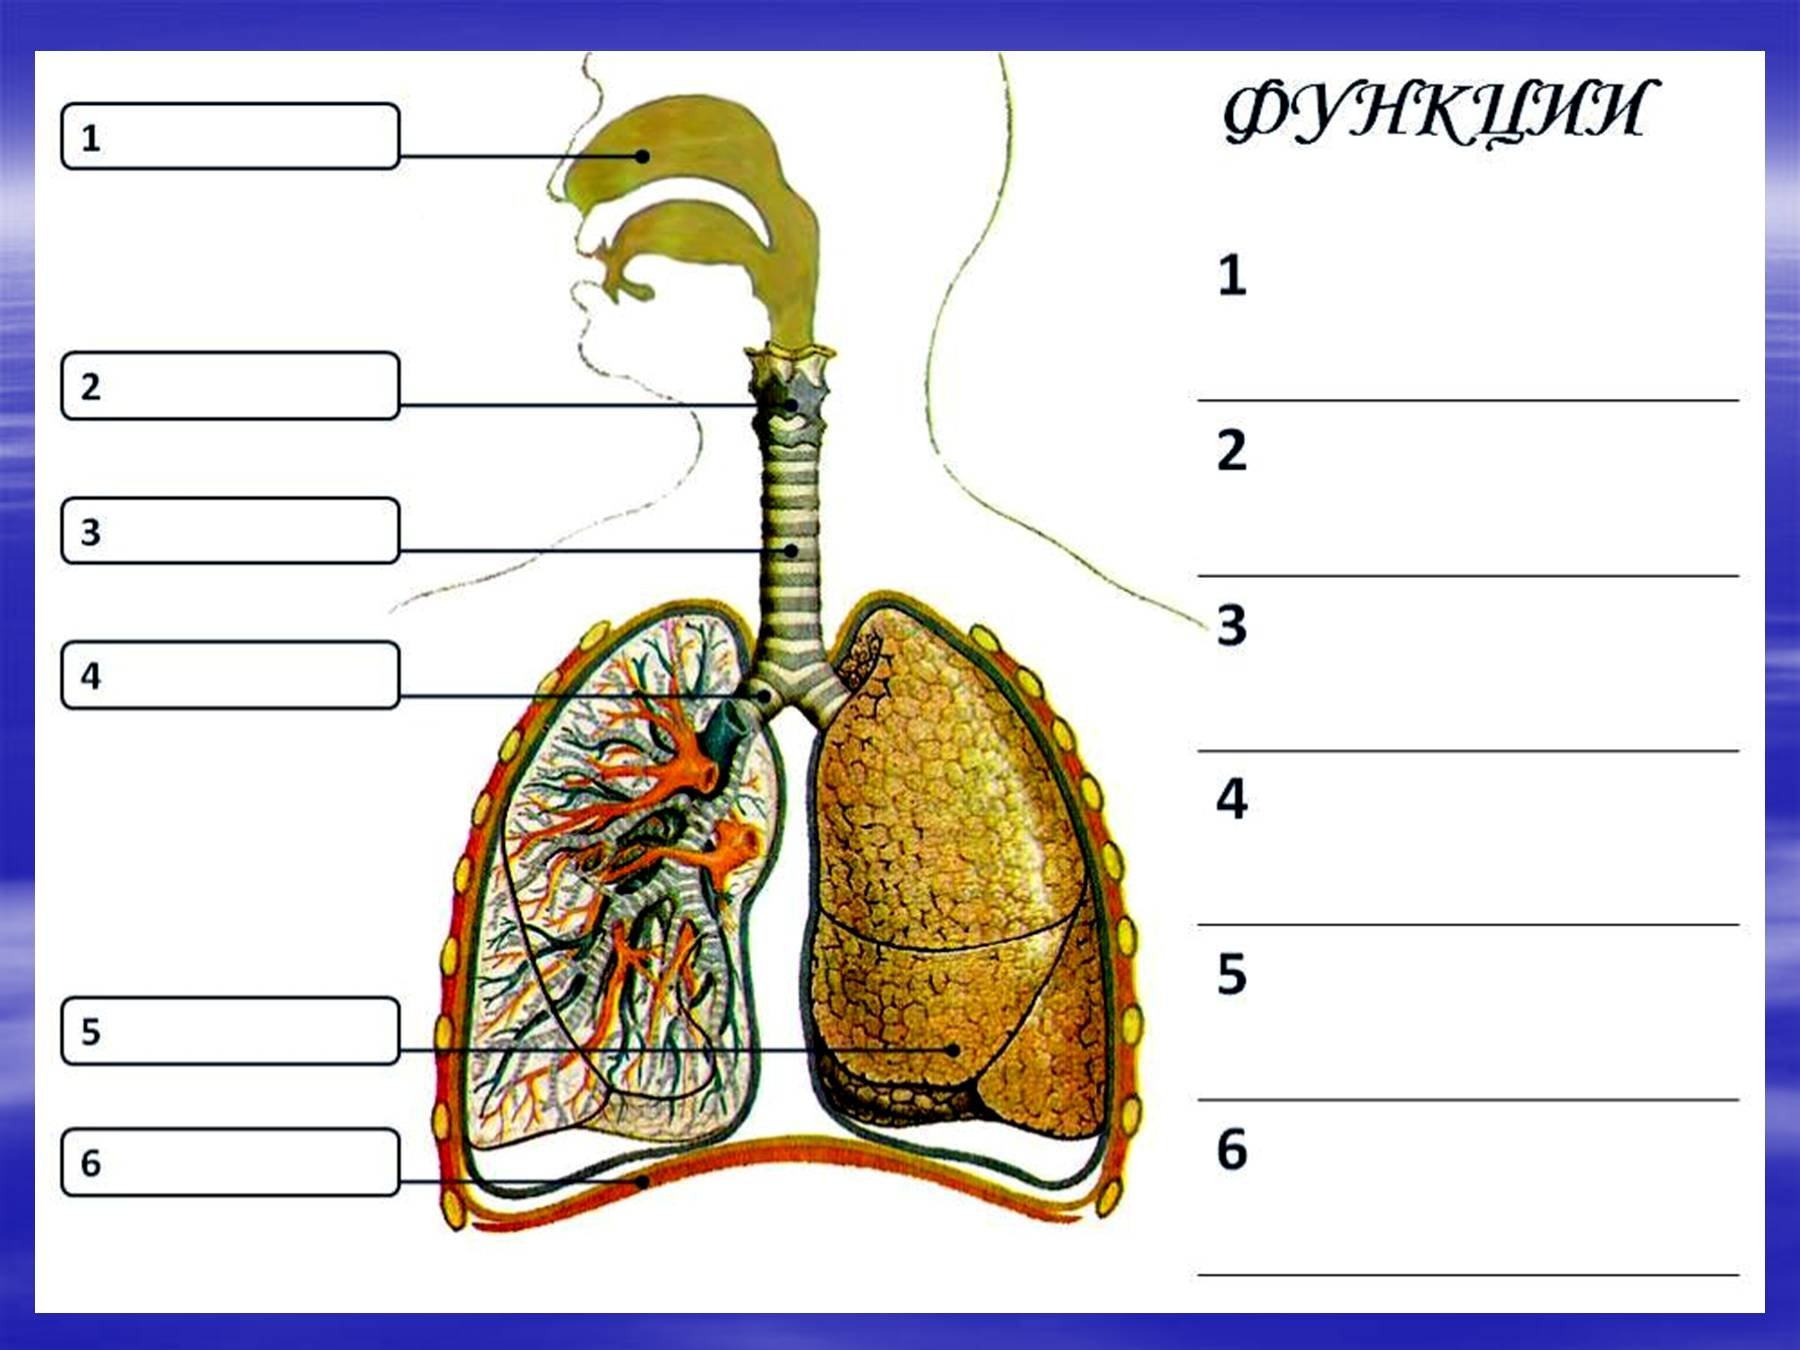 Носоглотка бронхи гортань носовая полость легкие трахея. Строение системы органов дыхания человека. Дыхательная система человека трахея и бронхи. Дыхательная система трахея анатомия человека. Система органов дыхания человека 8 класс.